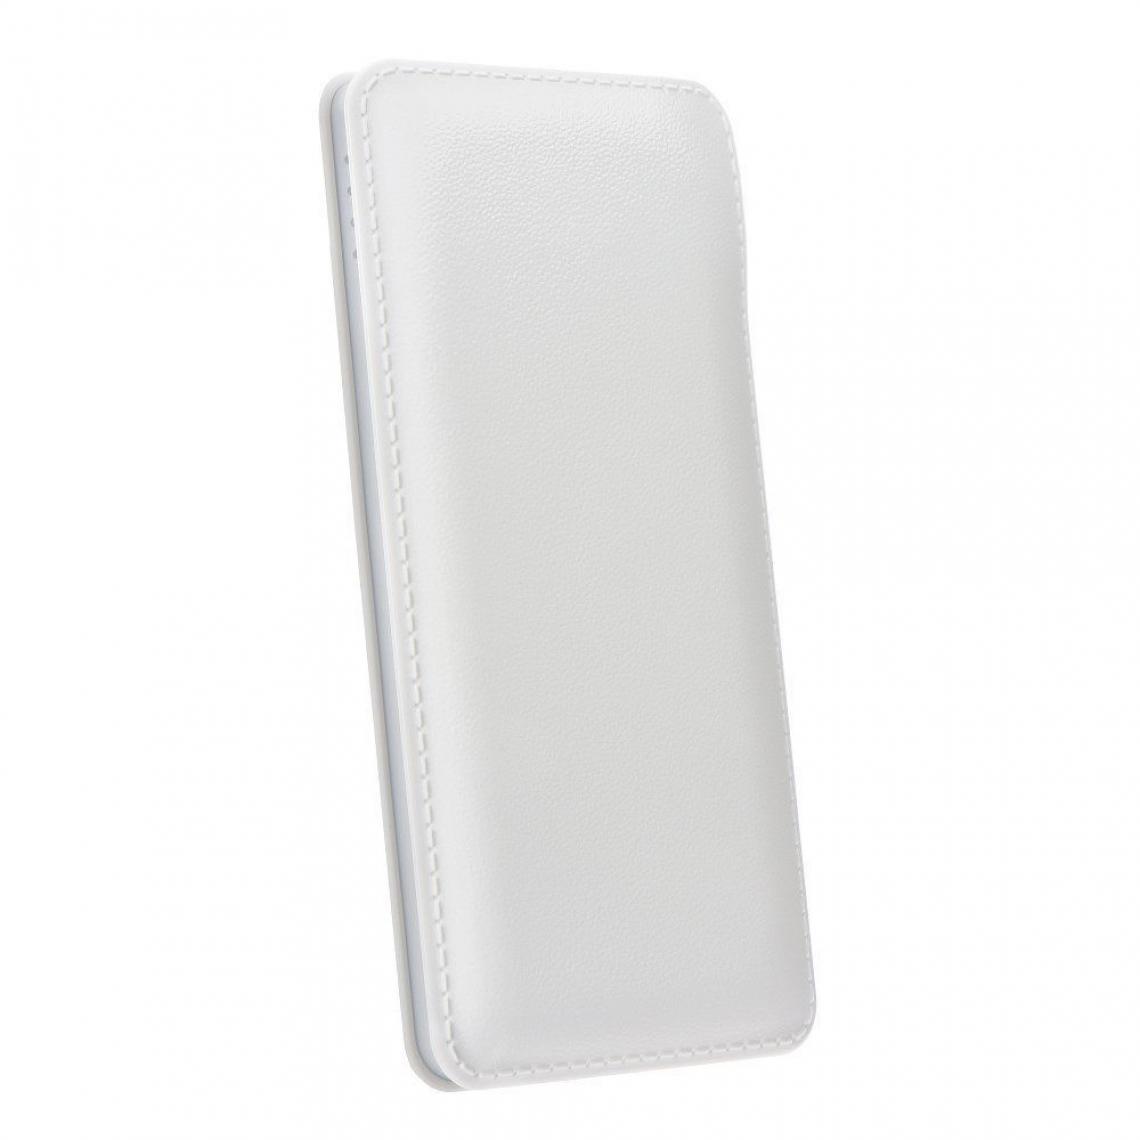 Ozzzo - Chargeur batterie externe 20000 mAh powerbank ozzzo blanc pour SAMSUNG Galaxy J5 J500 - Autres accessoires smartphone